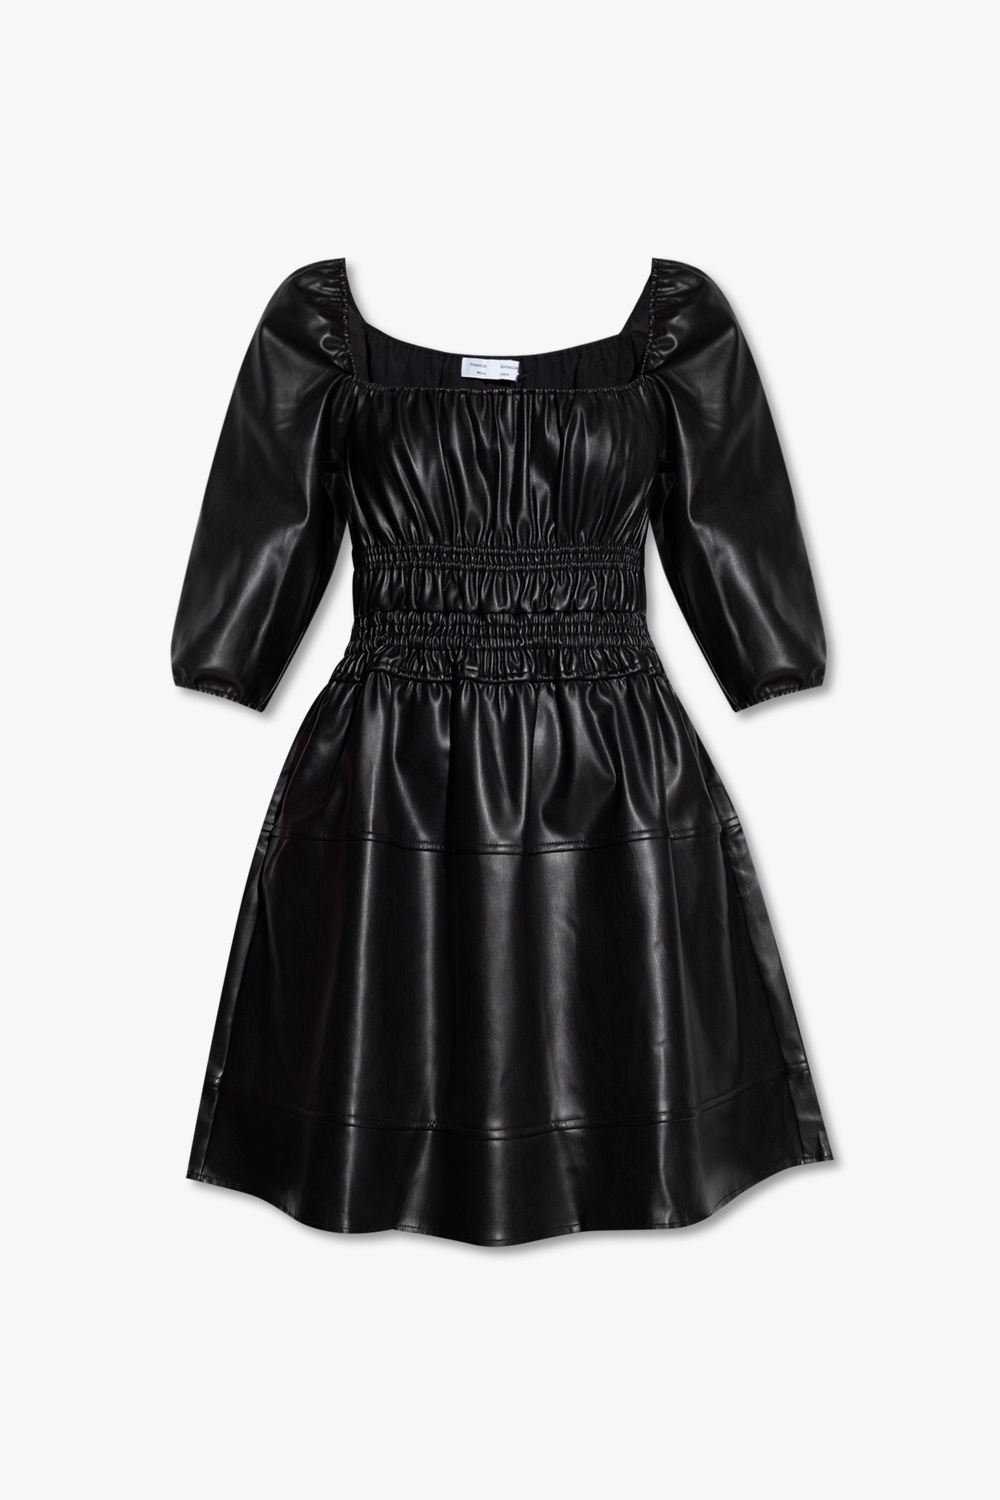 Louis Vuitton Plaid Zip Design Tops T-shirt Women Size XS 100% Silk From  Japan